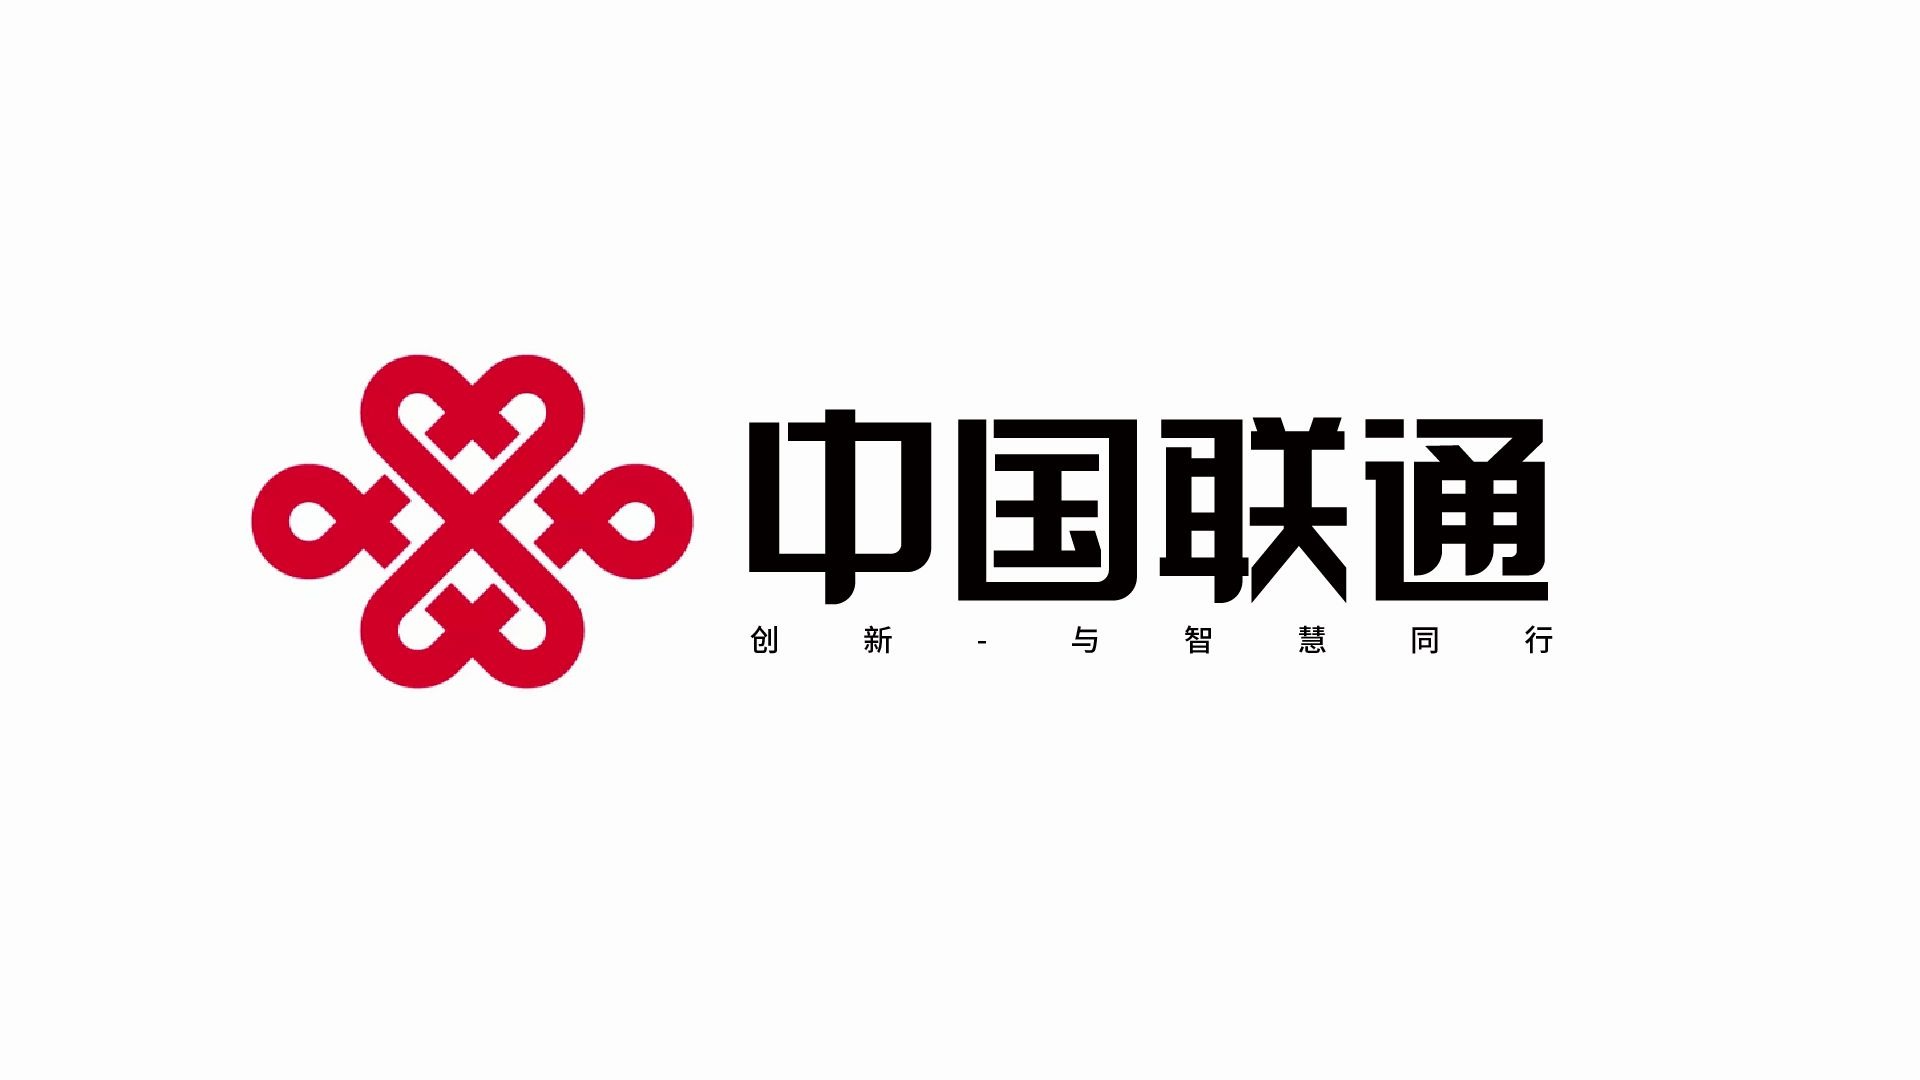 中国联通标志logo大图图片